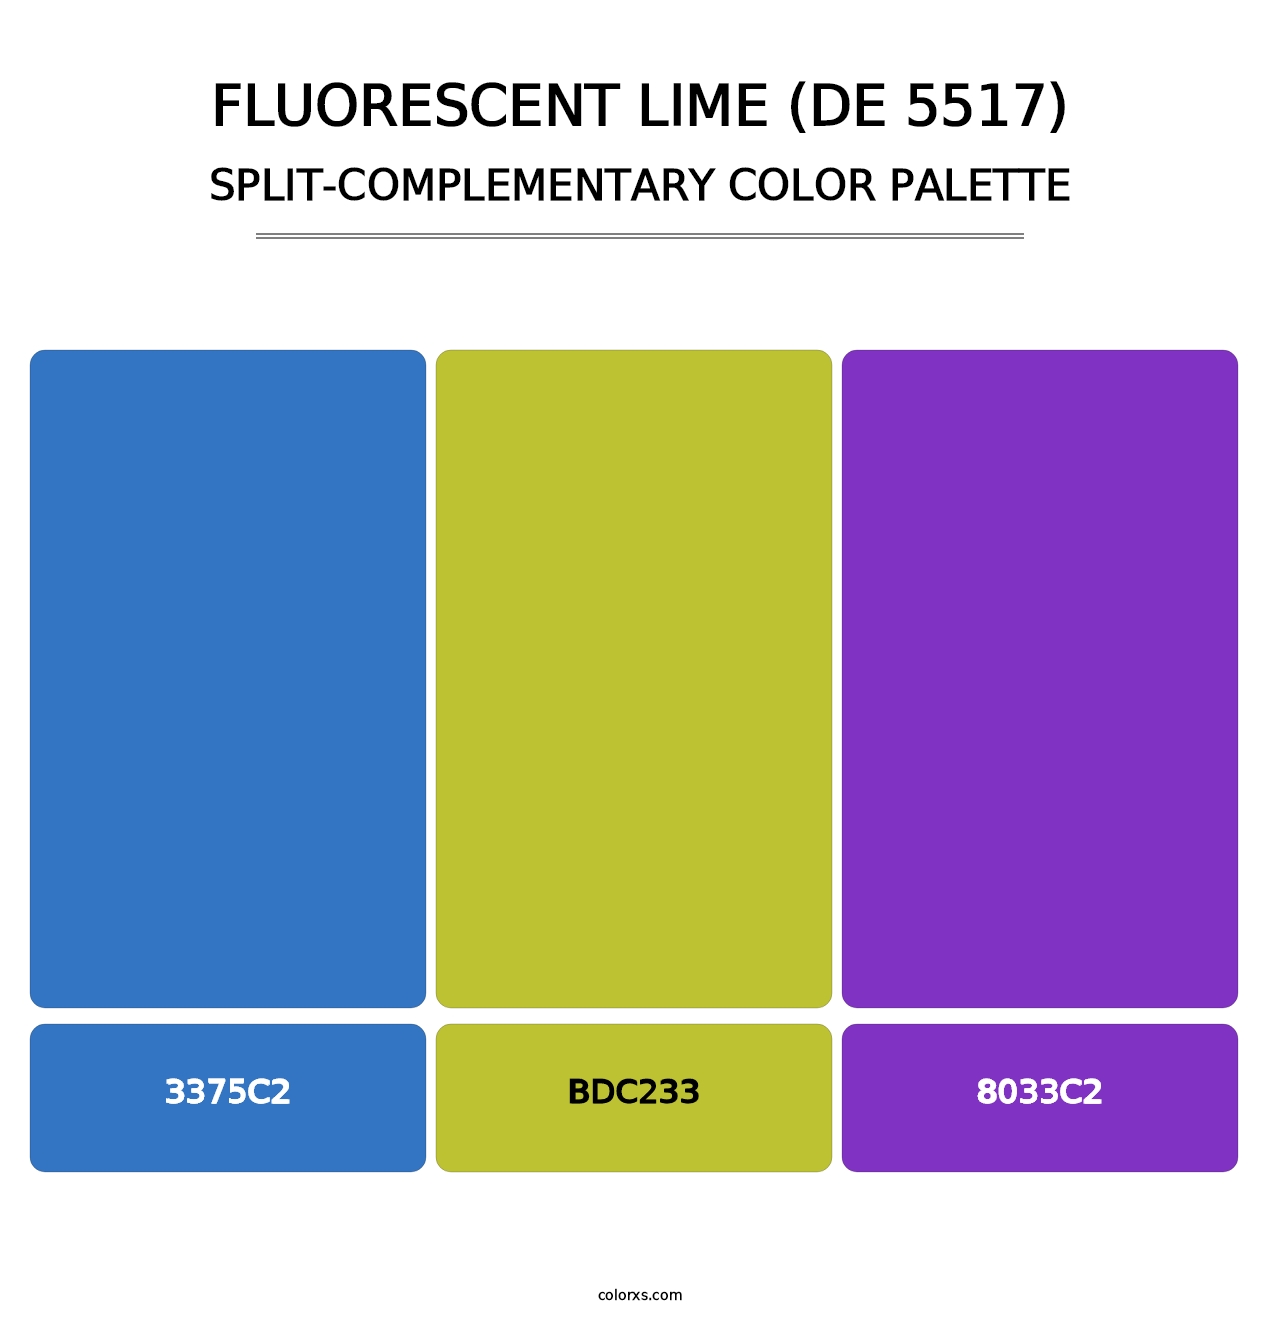 Fluorescent Lime (DE 5517) - Split-Complementary Color Palette